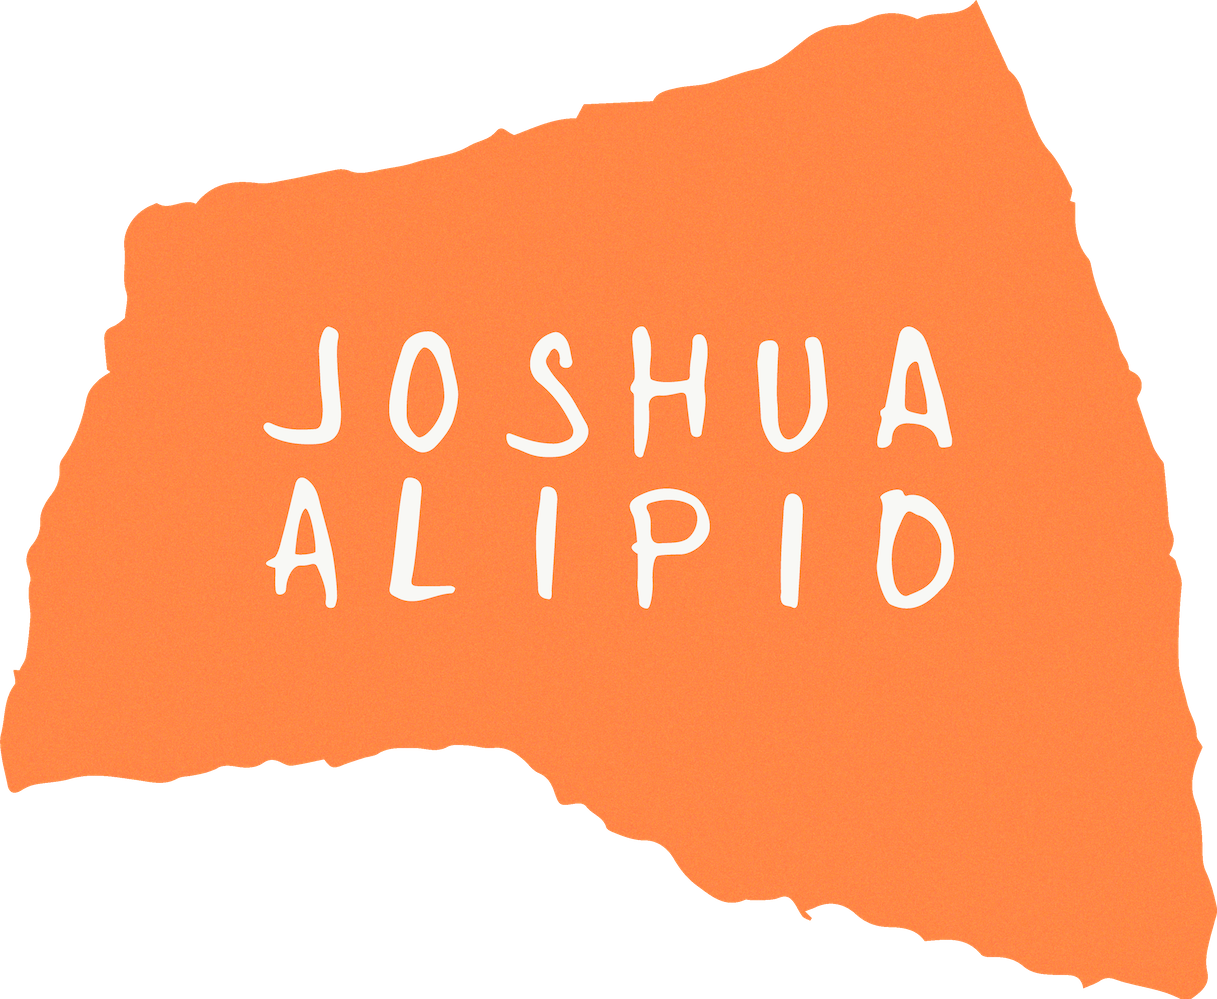 Joshua Alipio